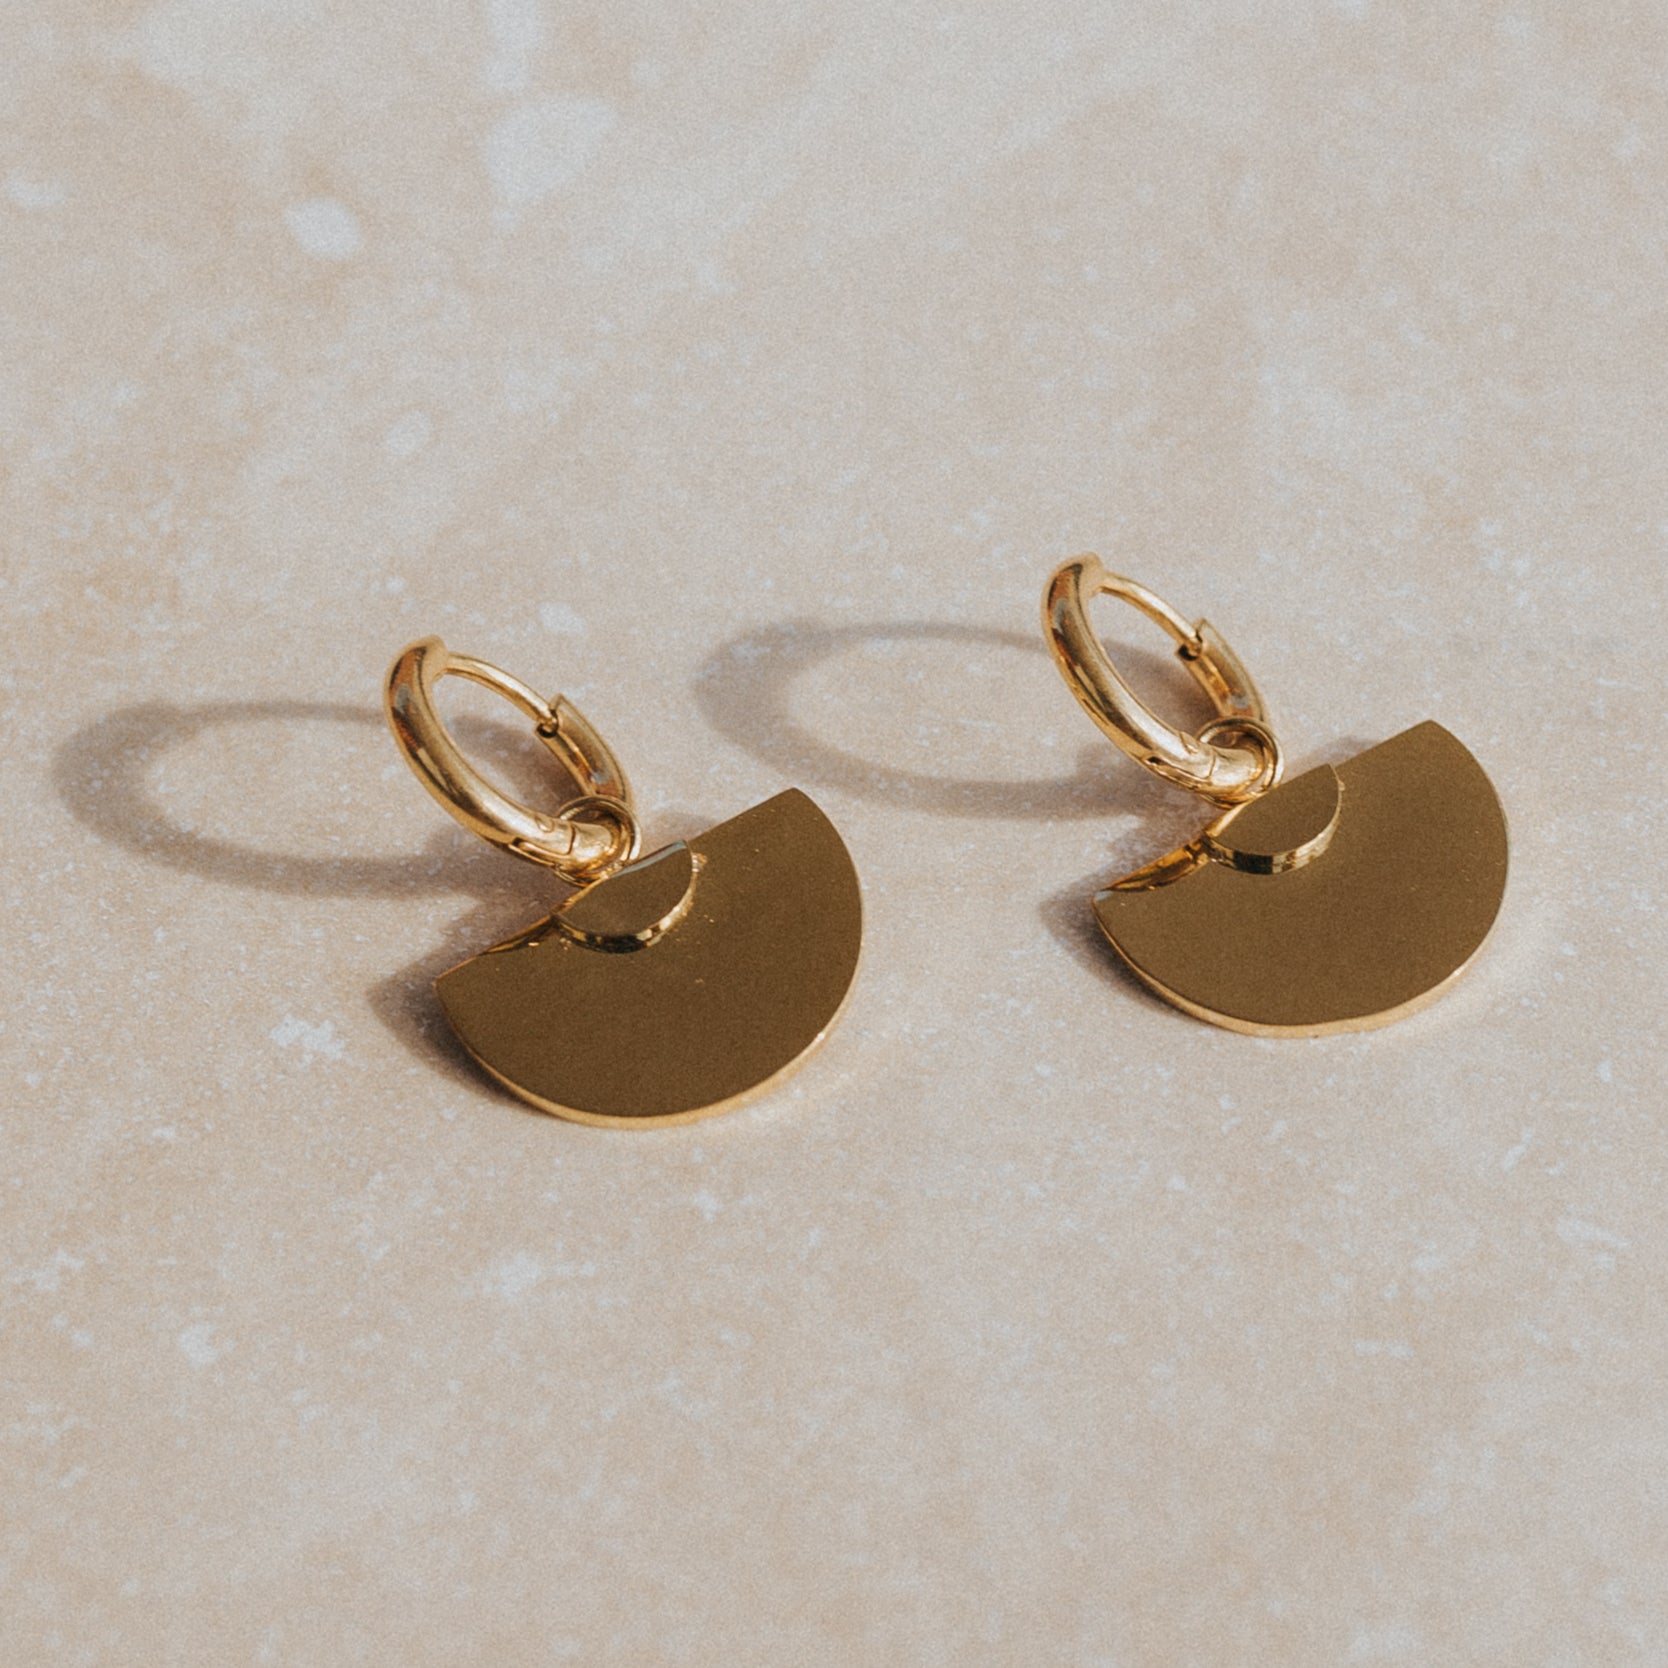 surf jewellery gold waterproof earrings